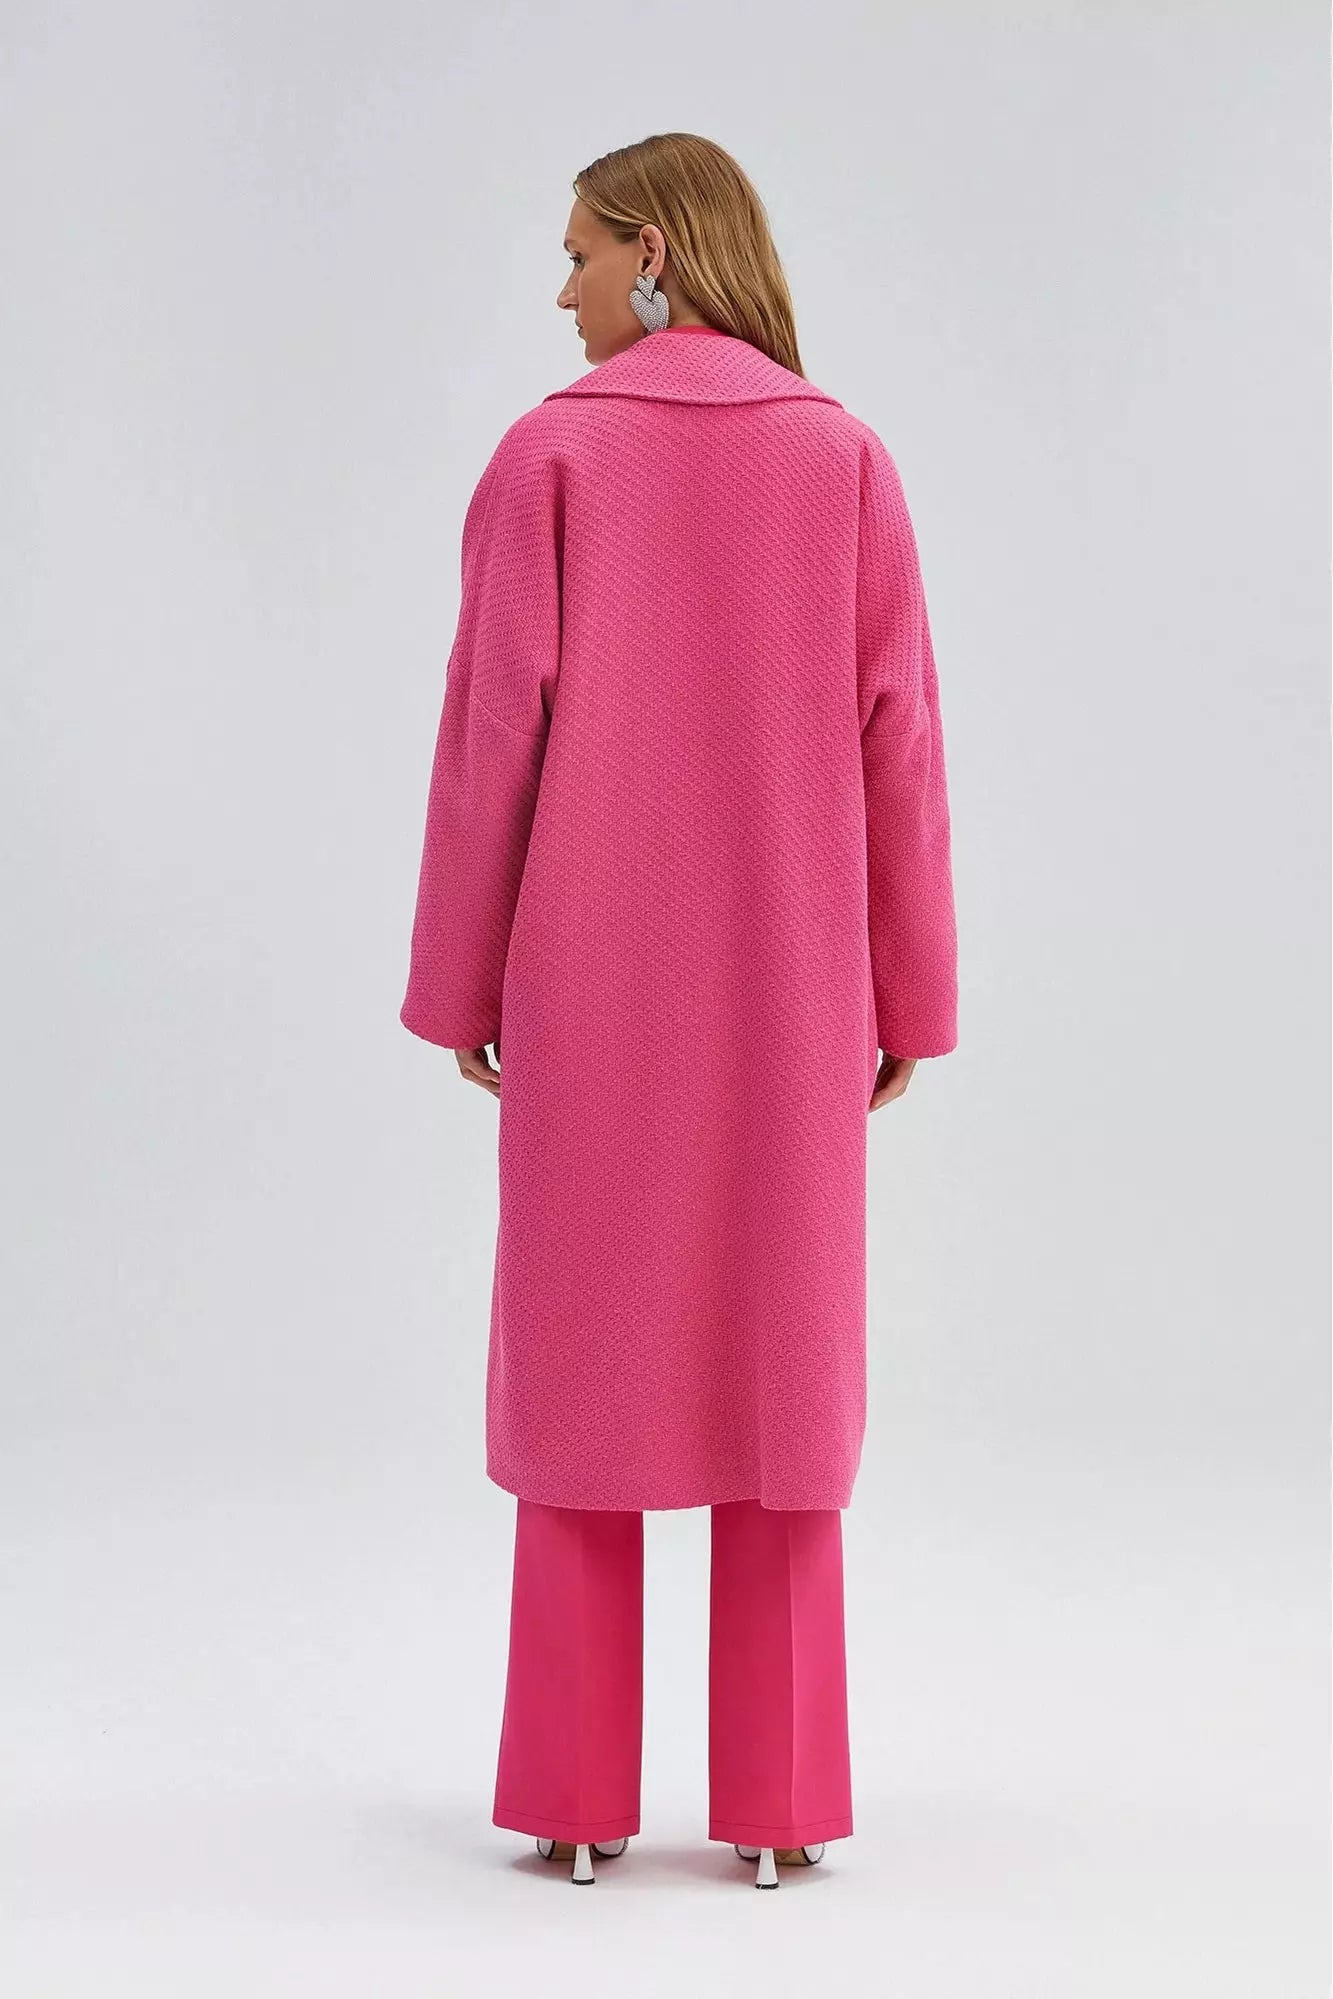 Ladies Nina Tweeted Coat in Pink - By Baano